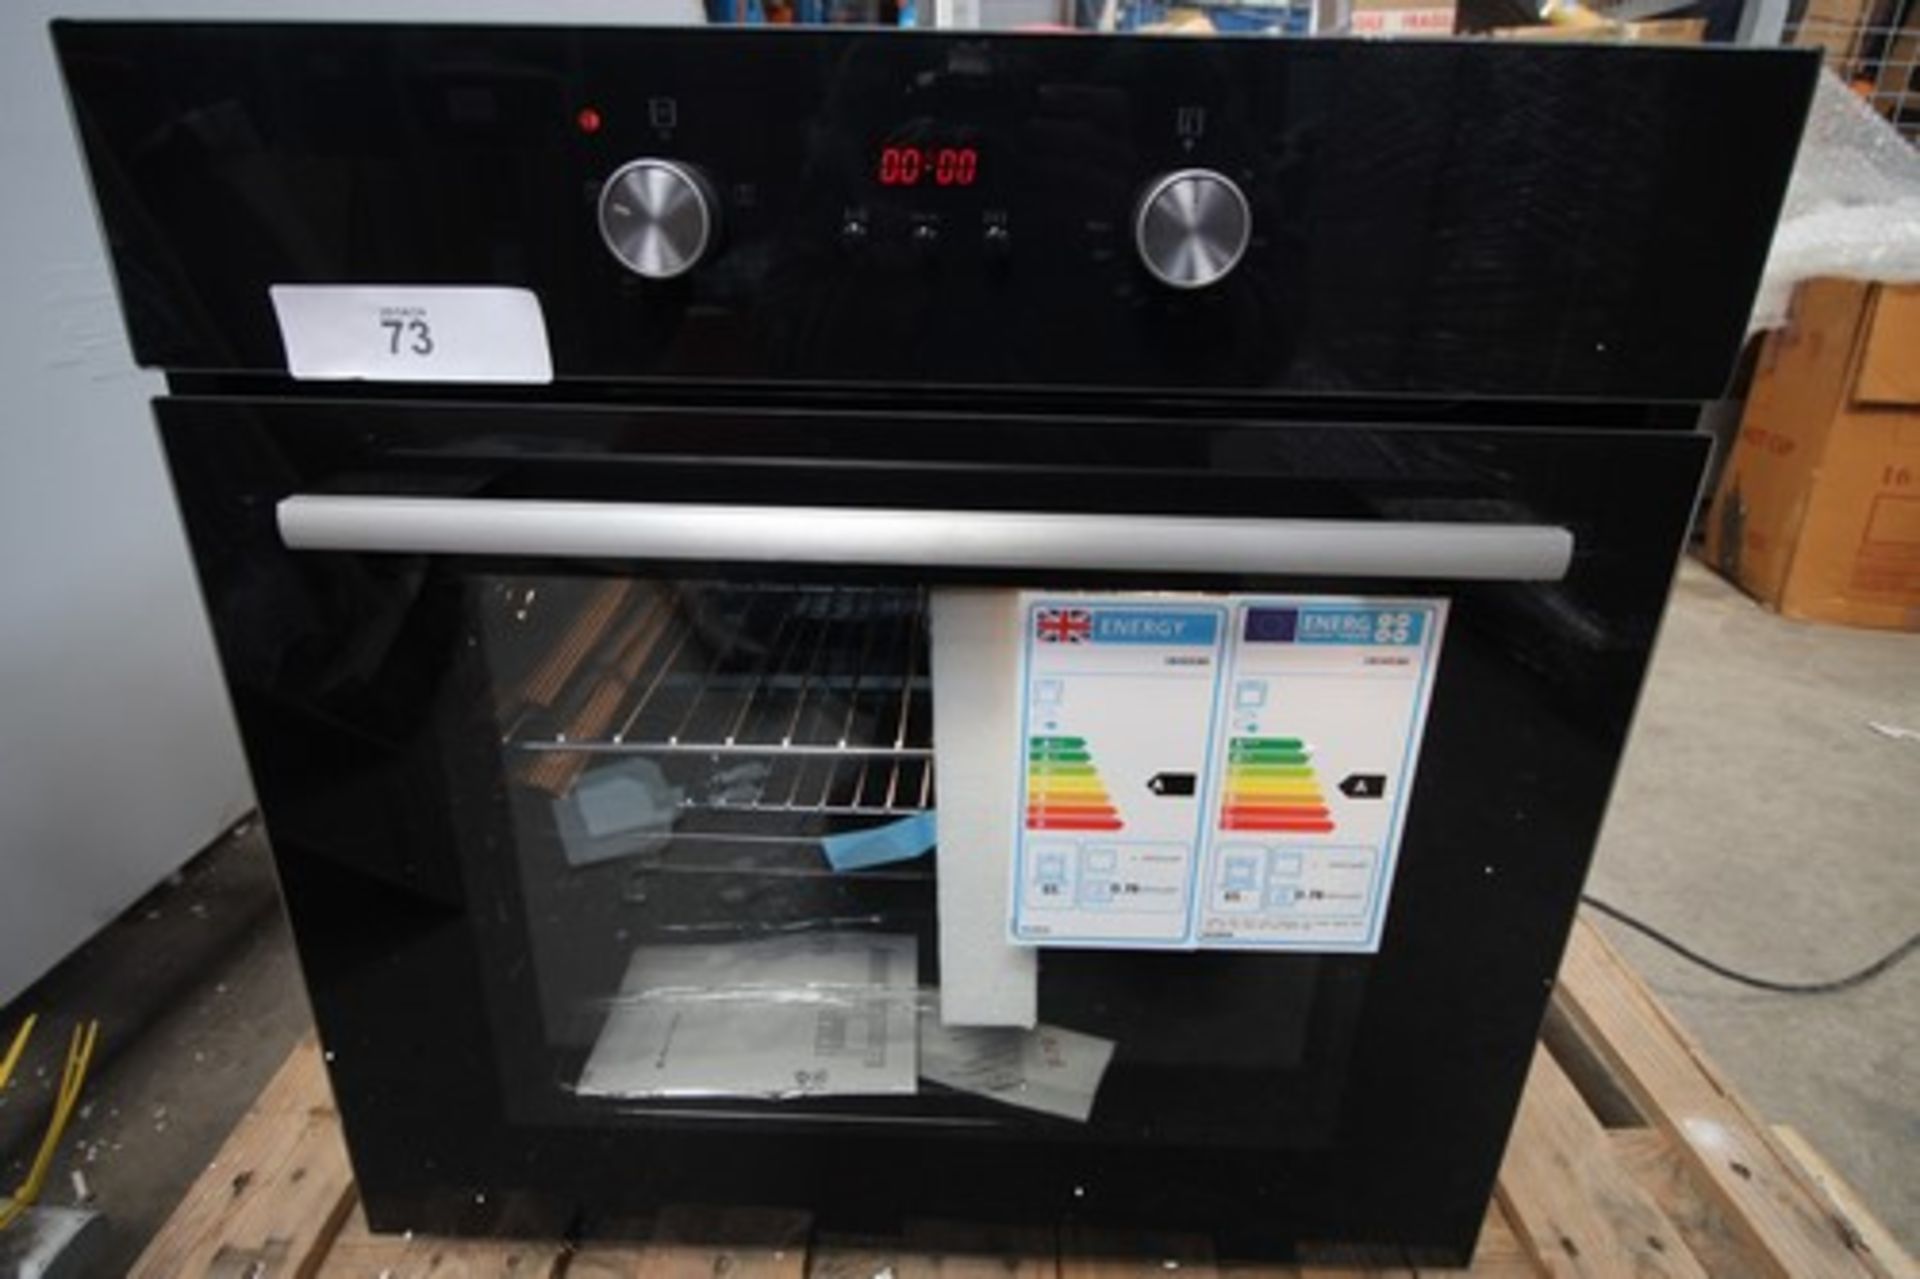 1 x Culina 65L single oven, black, model No: UB0652BK, small dent top right panel - new (ES9)